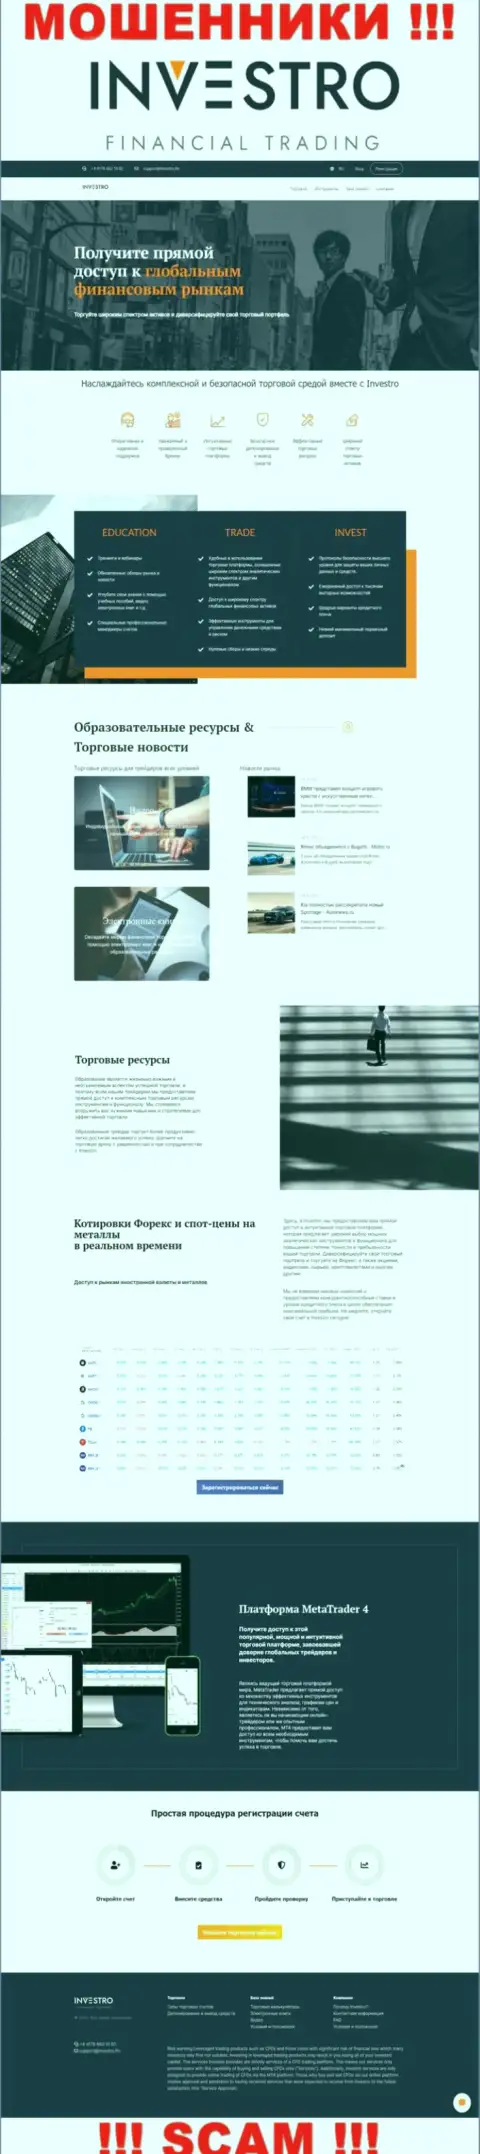 Скриншот официального ресурса Инвестро - Investro Fm